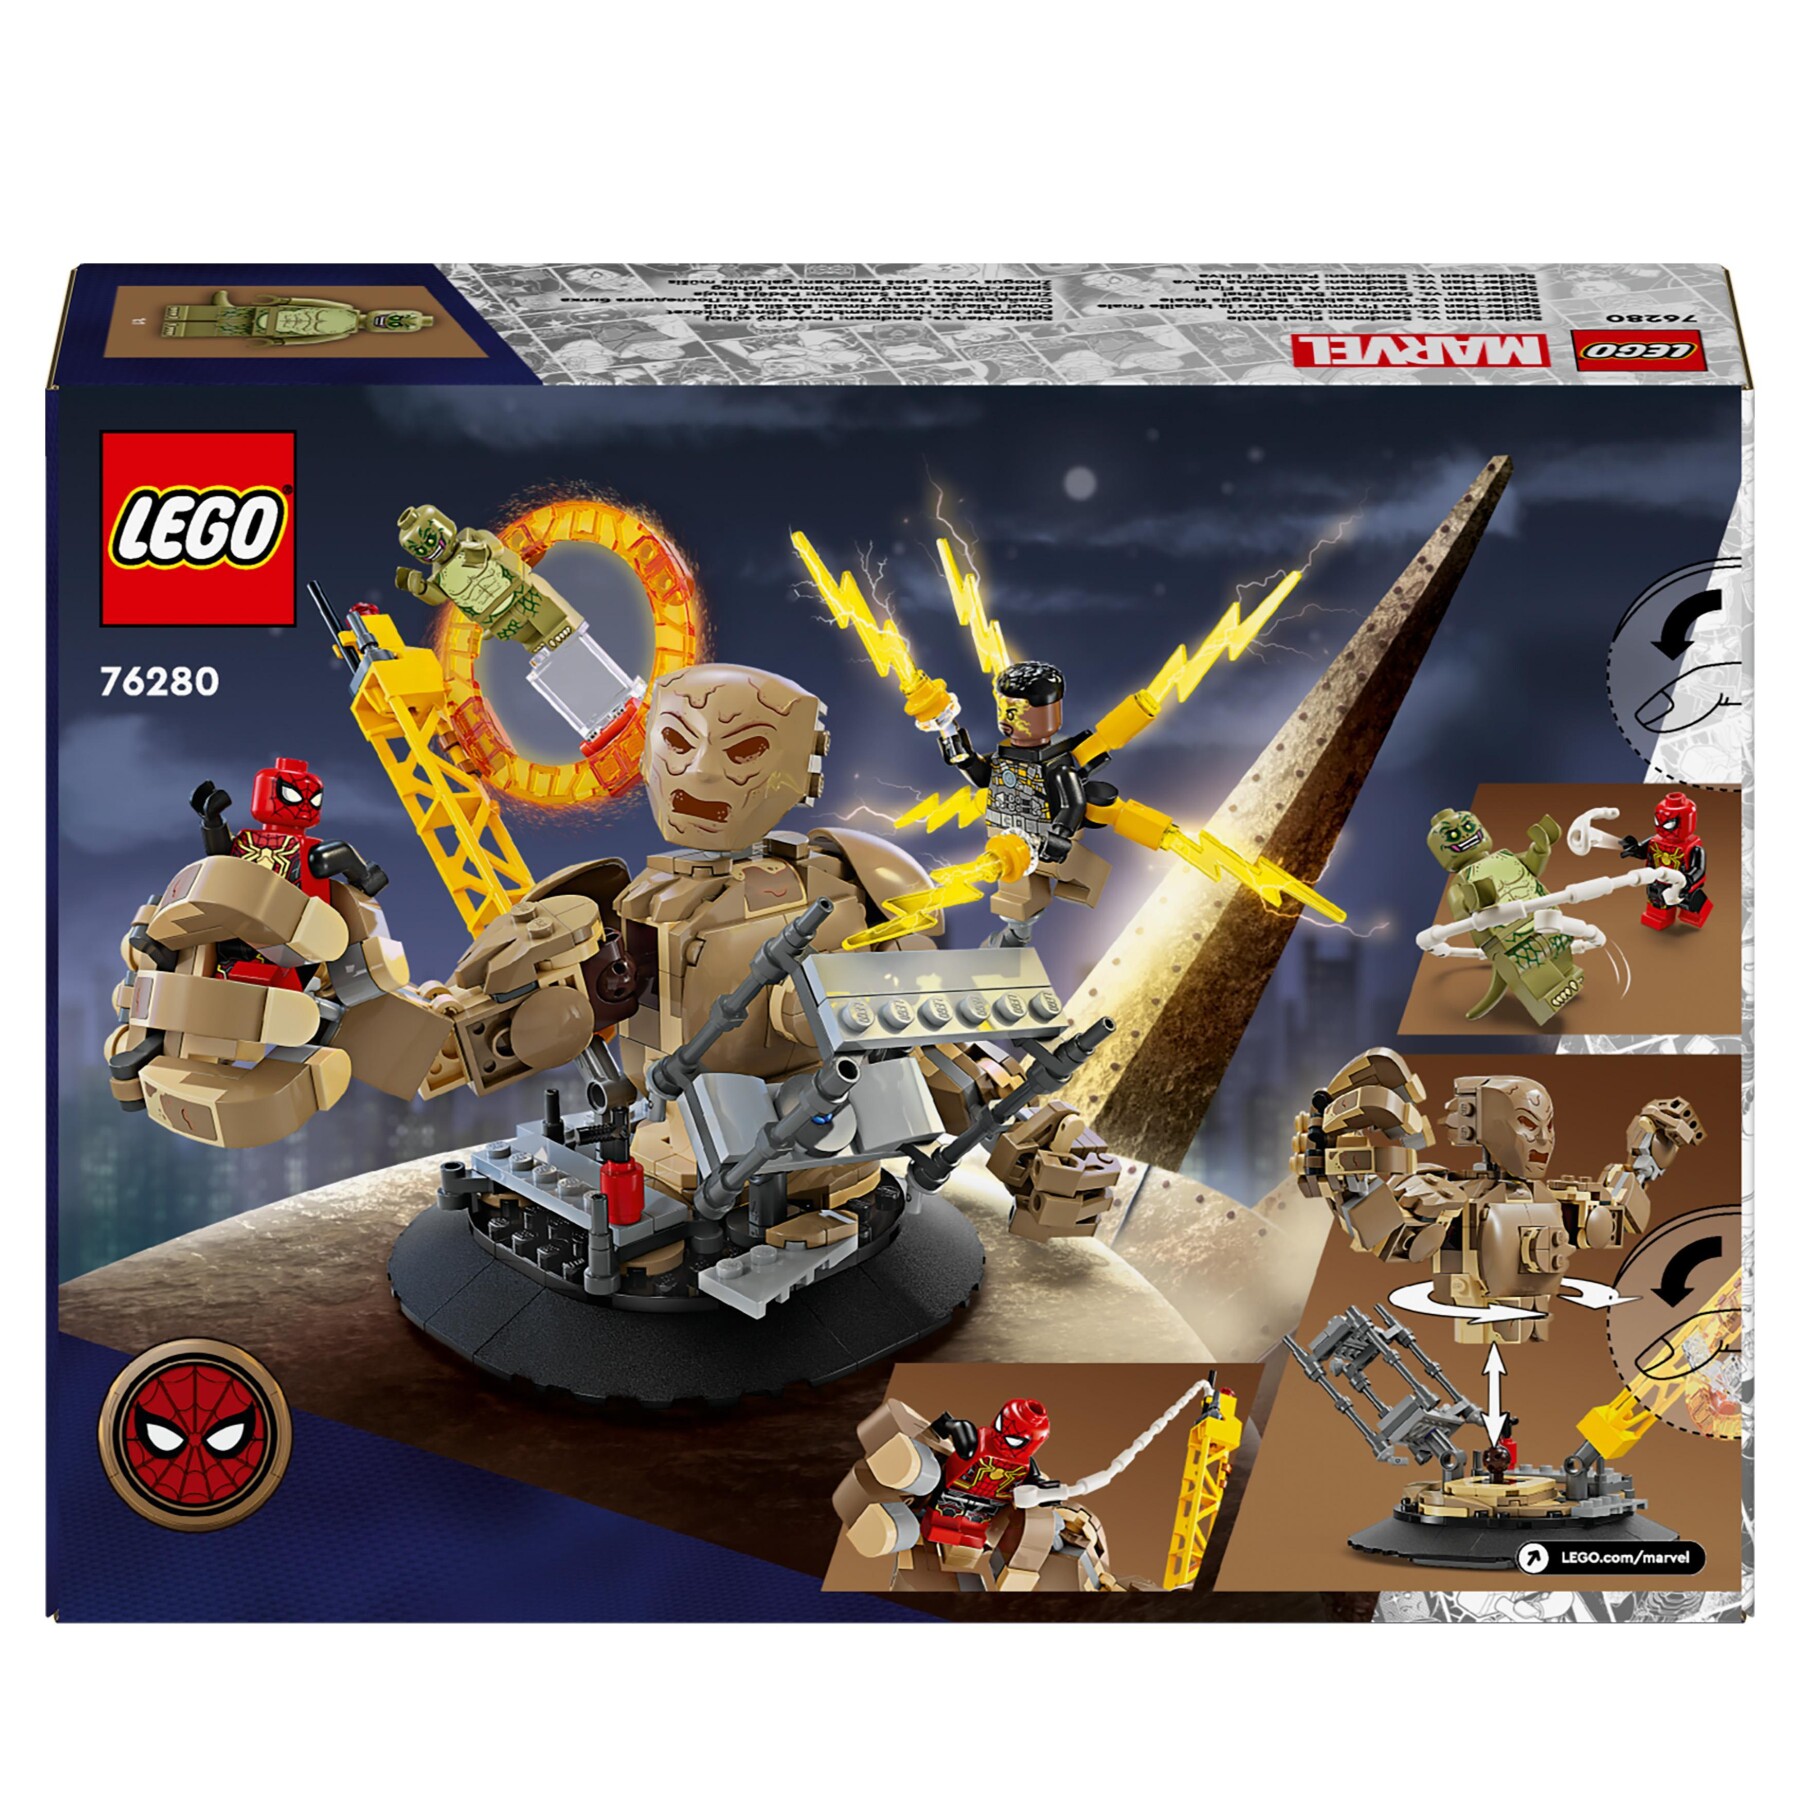 Lego marvel 76280 spider-man vs. uomo sabbia: battaglia finale con minifigure dei cattivi, gioco per bambini 10+, idea regalo - LEGO SUPER HEROES, Avengers, Spiderman